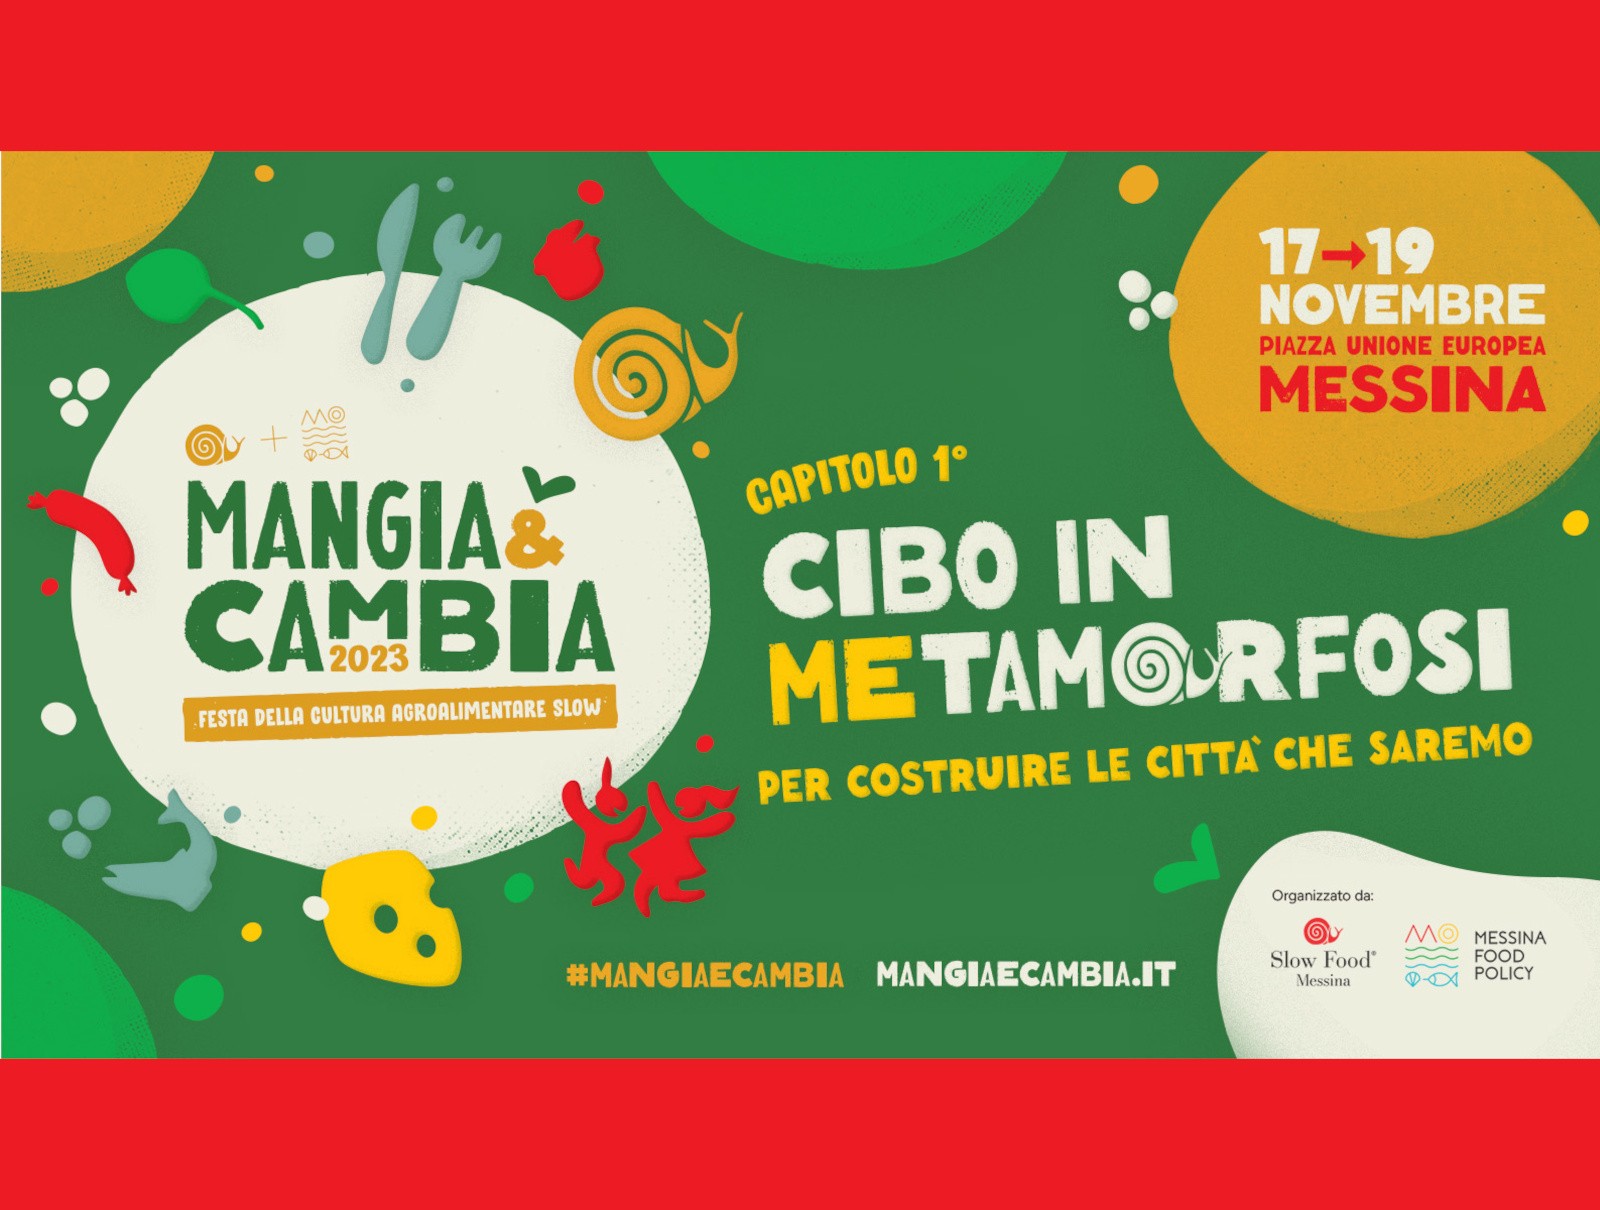 Ecco a voi "Mangia & Cambia", la festa della cultura agroalimentare slow a Messina